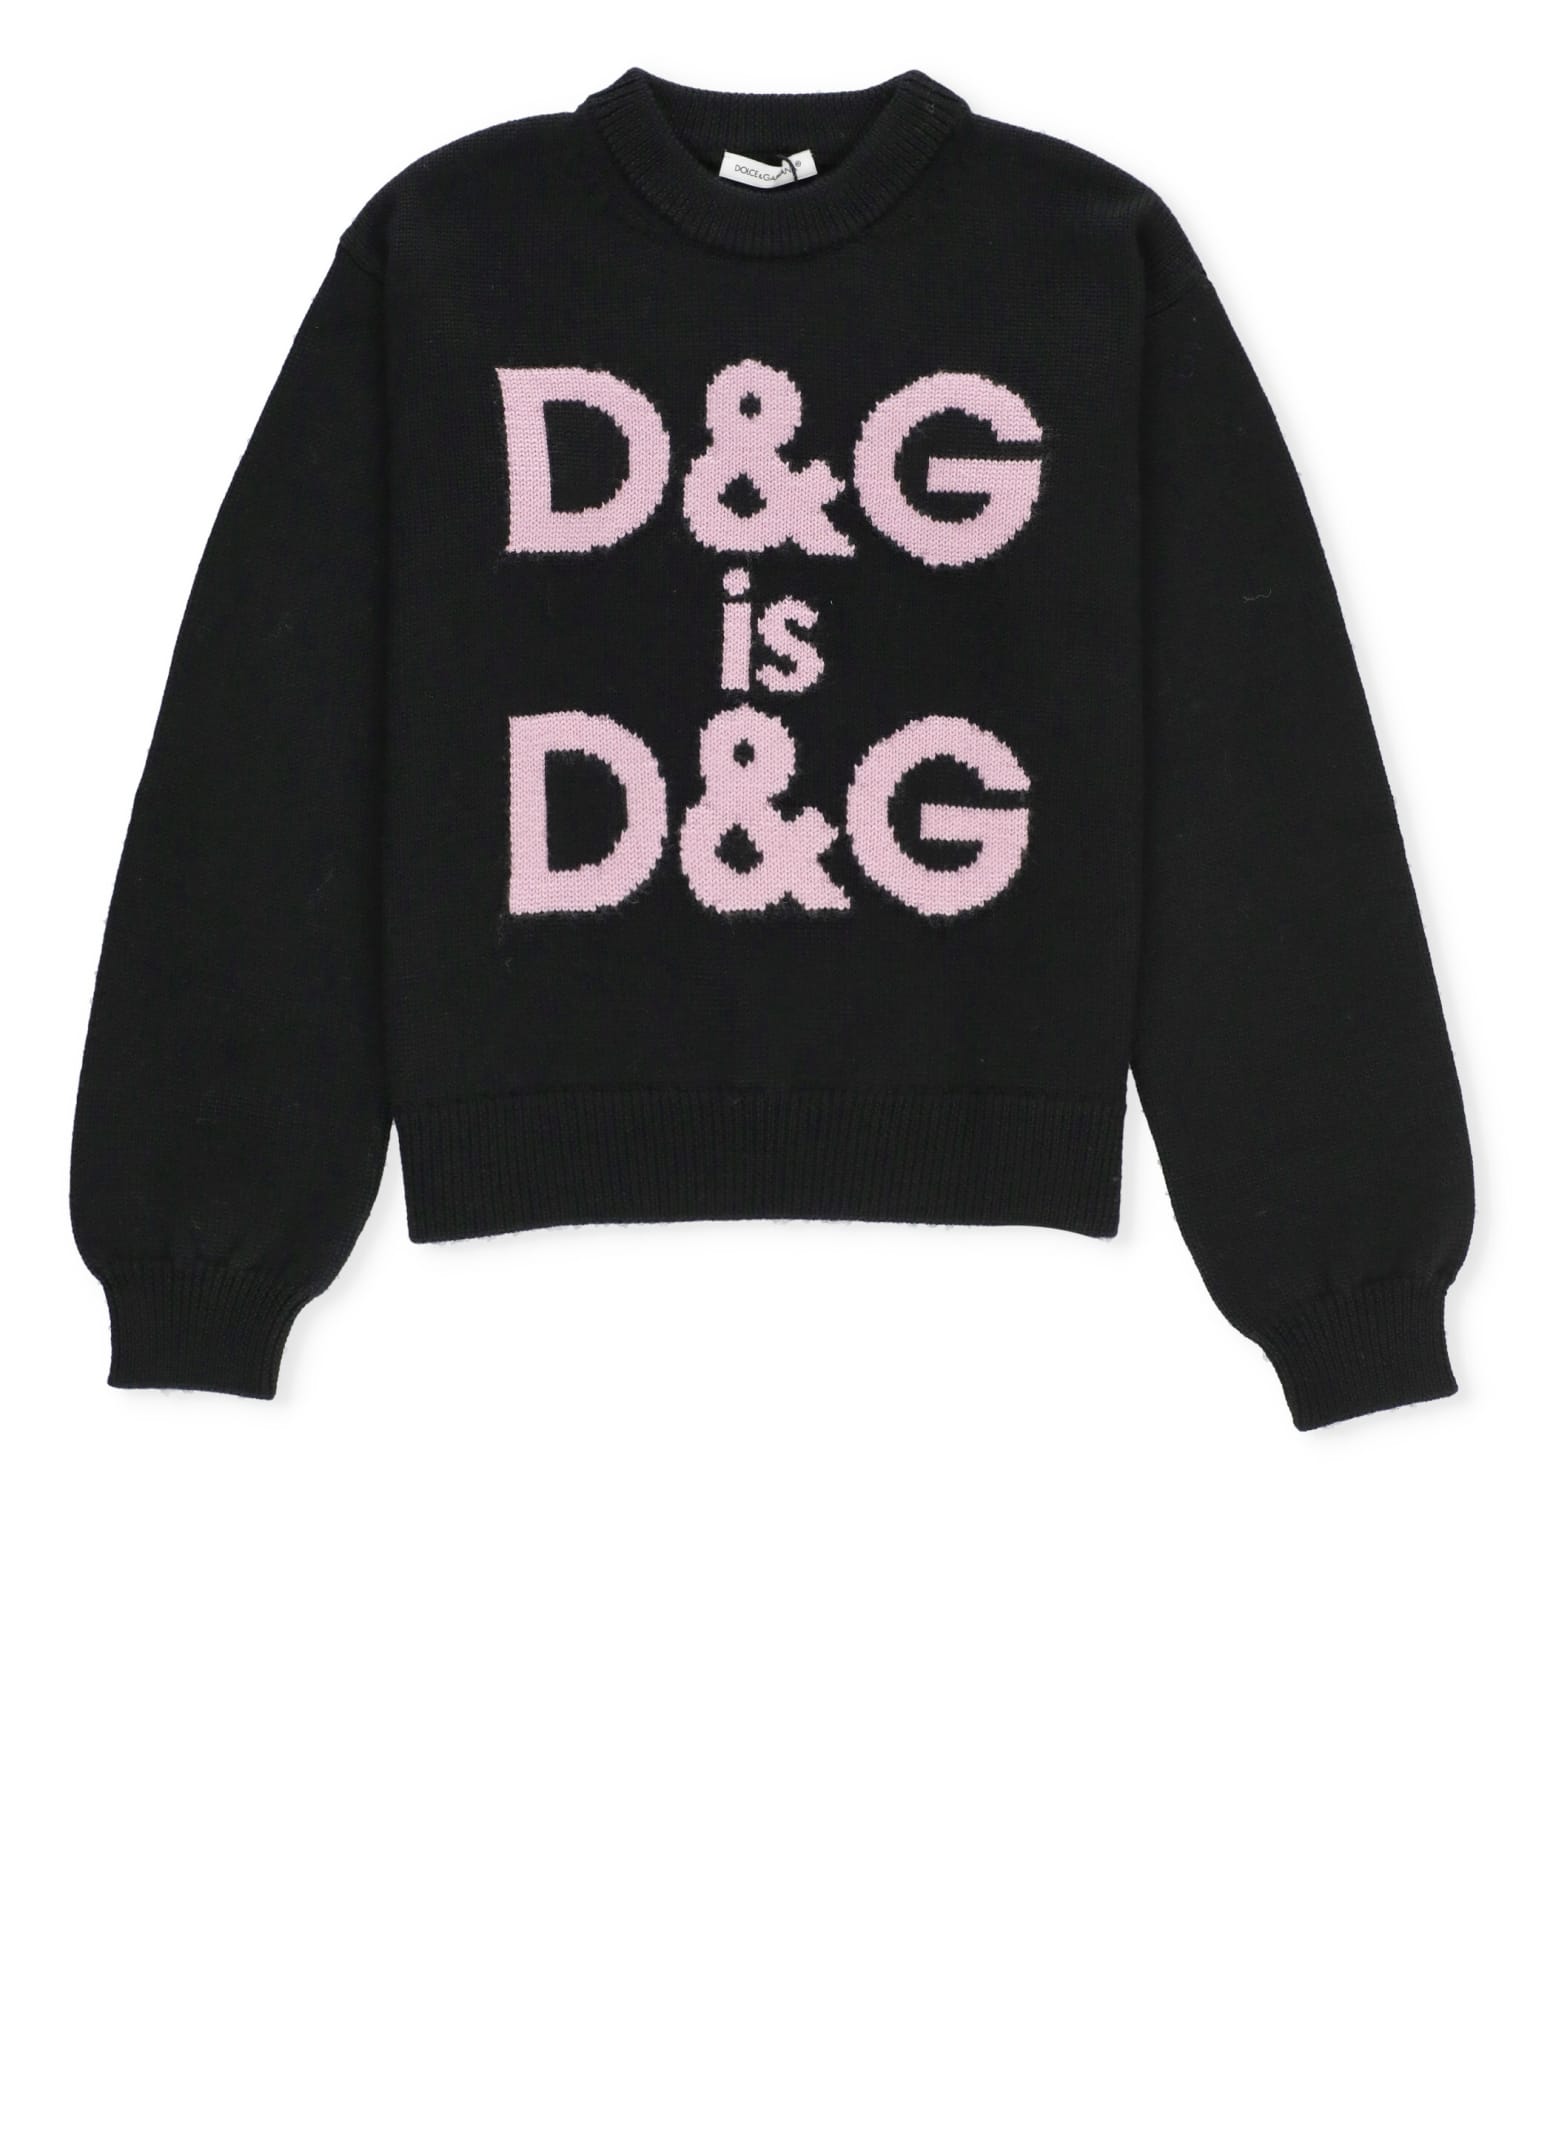 Dolce & Gabbana Kids' Wool Sweater In Black